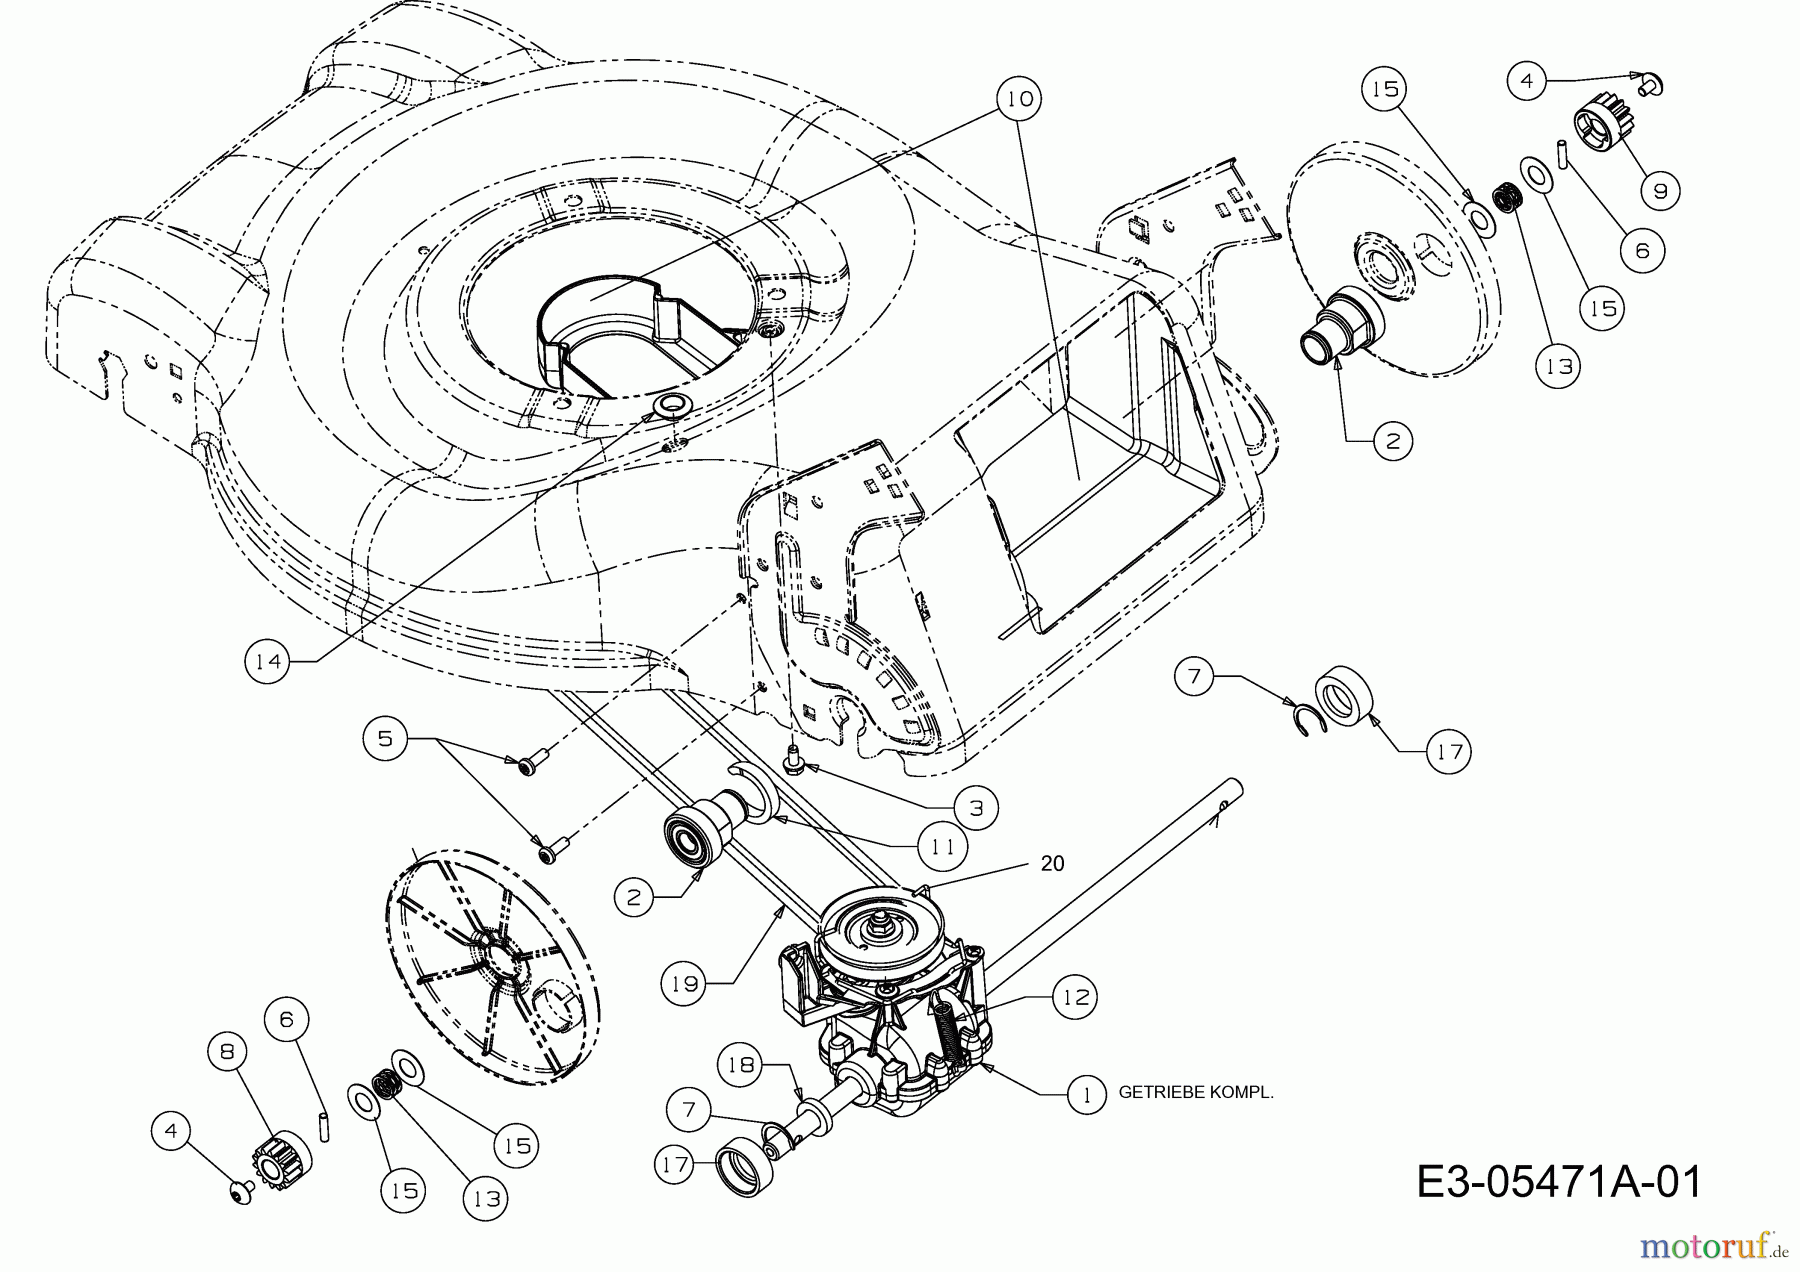  MTD Motormäher mit Antrieb GL 46 SPO 12D-J5M2686  (2010) Getriebe